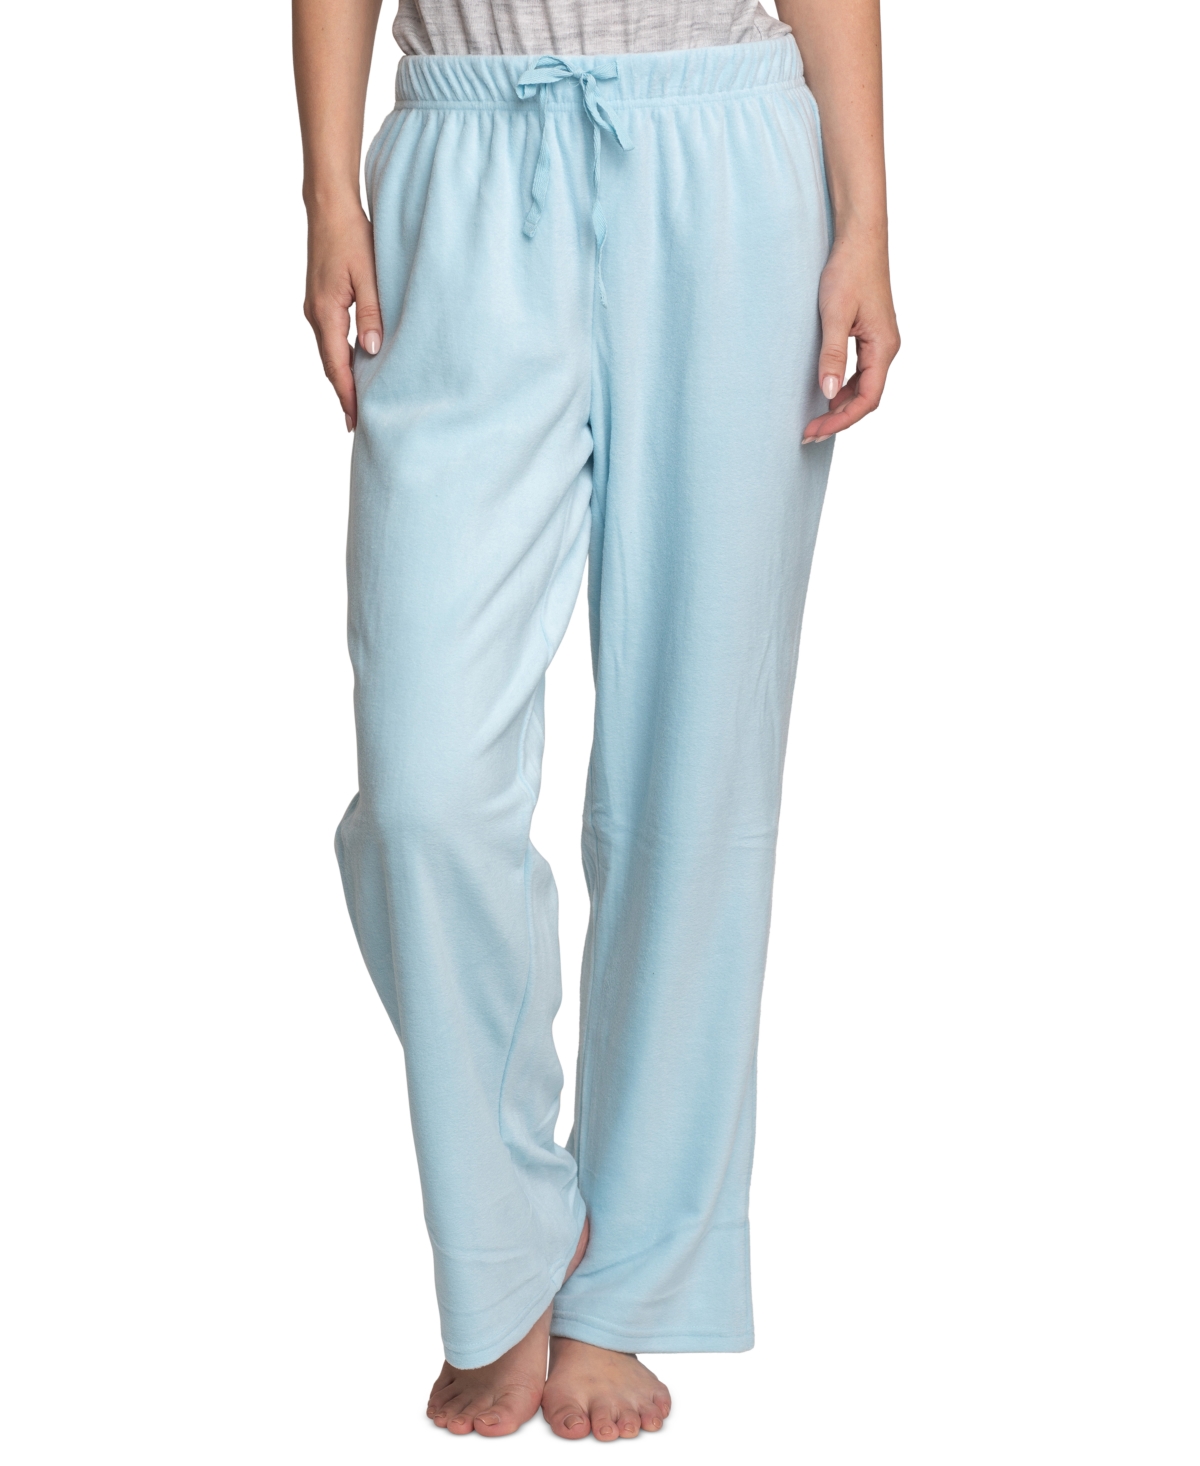 Women's 2-Pk. Stretch Fleece Lounge Pajama Pants - Blue Snowflakes